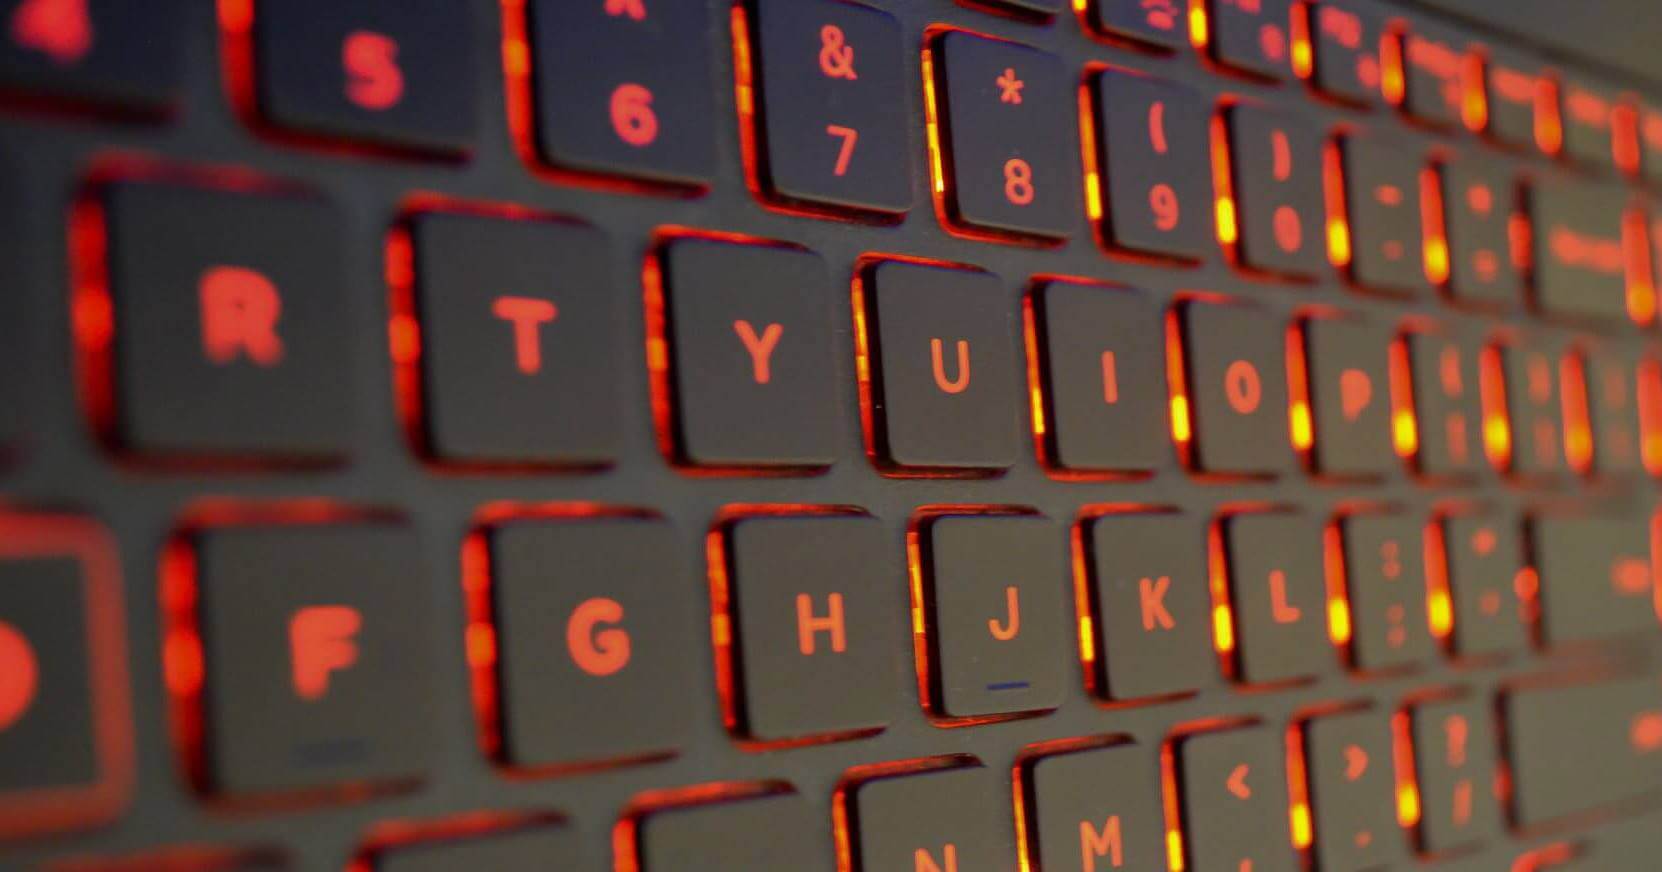 Экспертам удалось обмануть системы верификации, узнающие пользователя по нажатиям клавиш